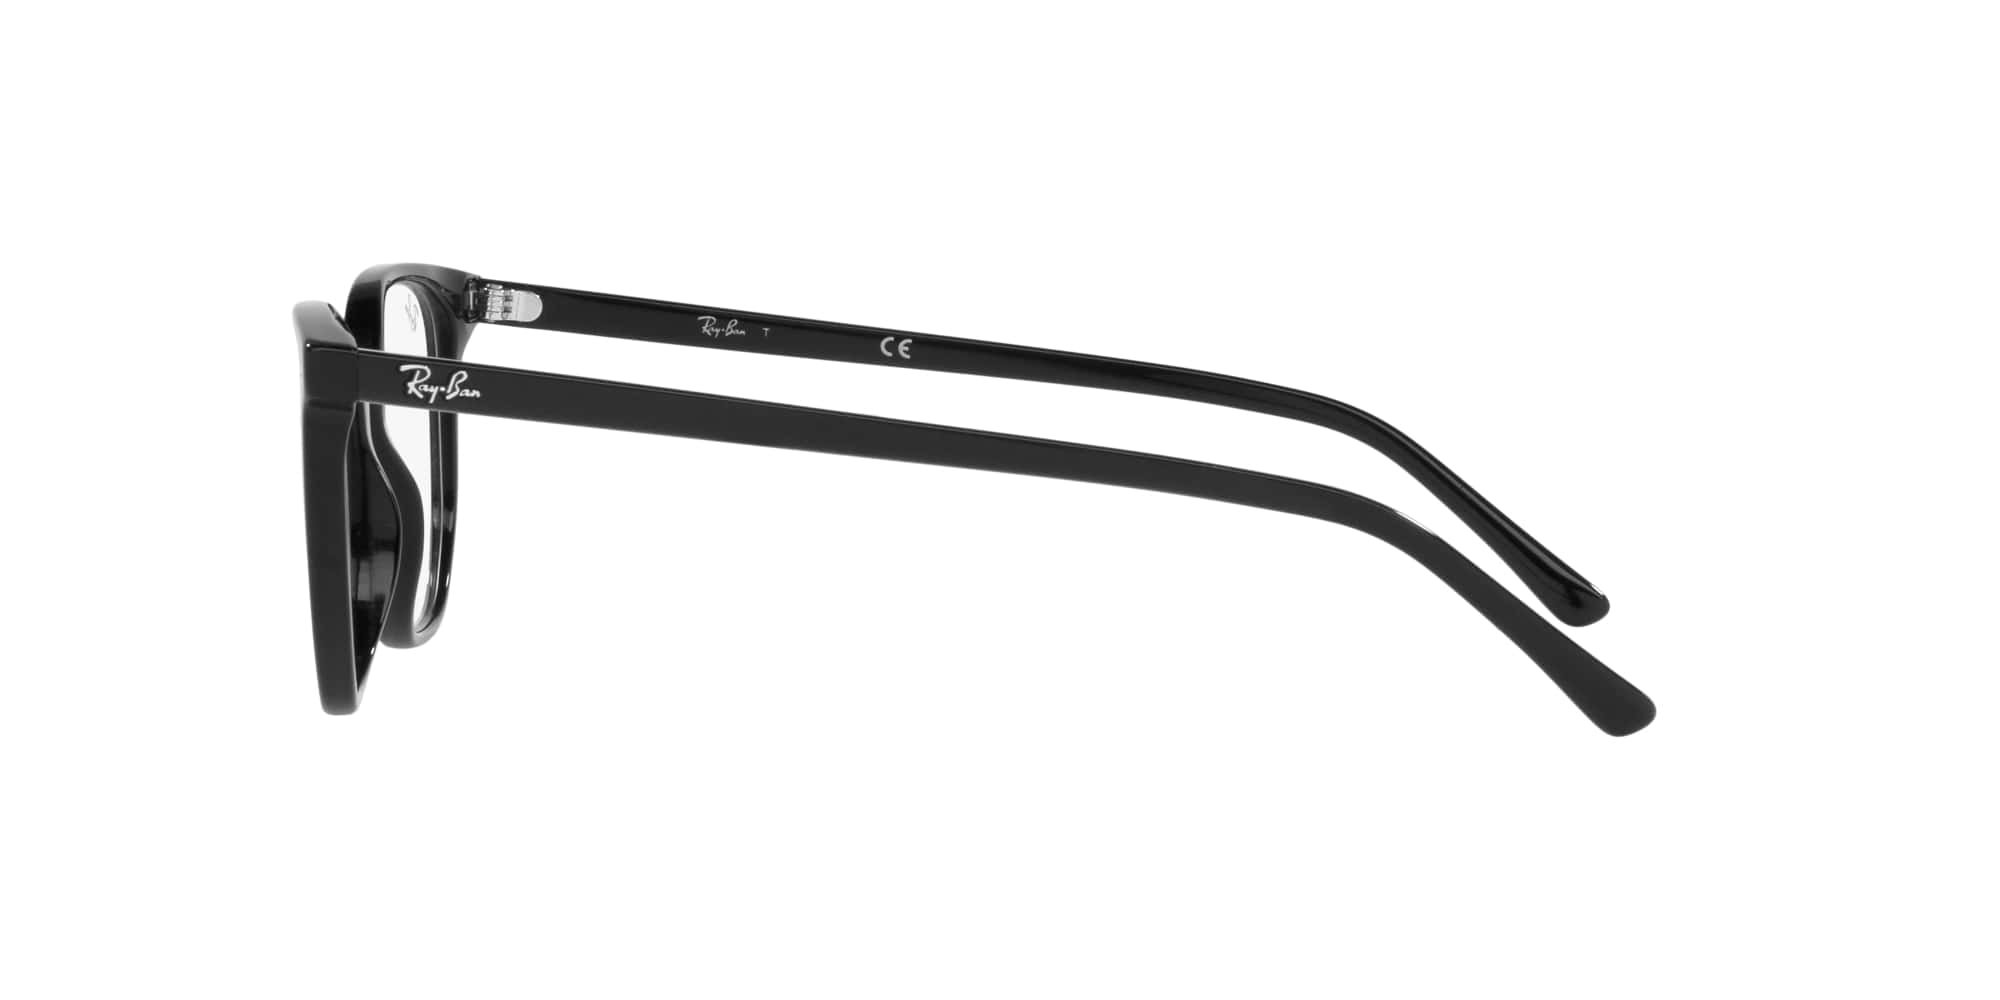 Das Bild zeigt die Korrektionsbrille RX5397 2000 von der Marke Ray Ban in schwarz.